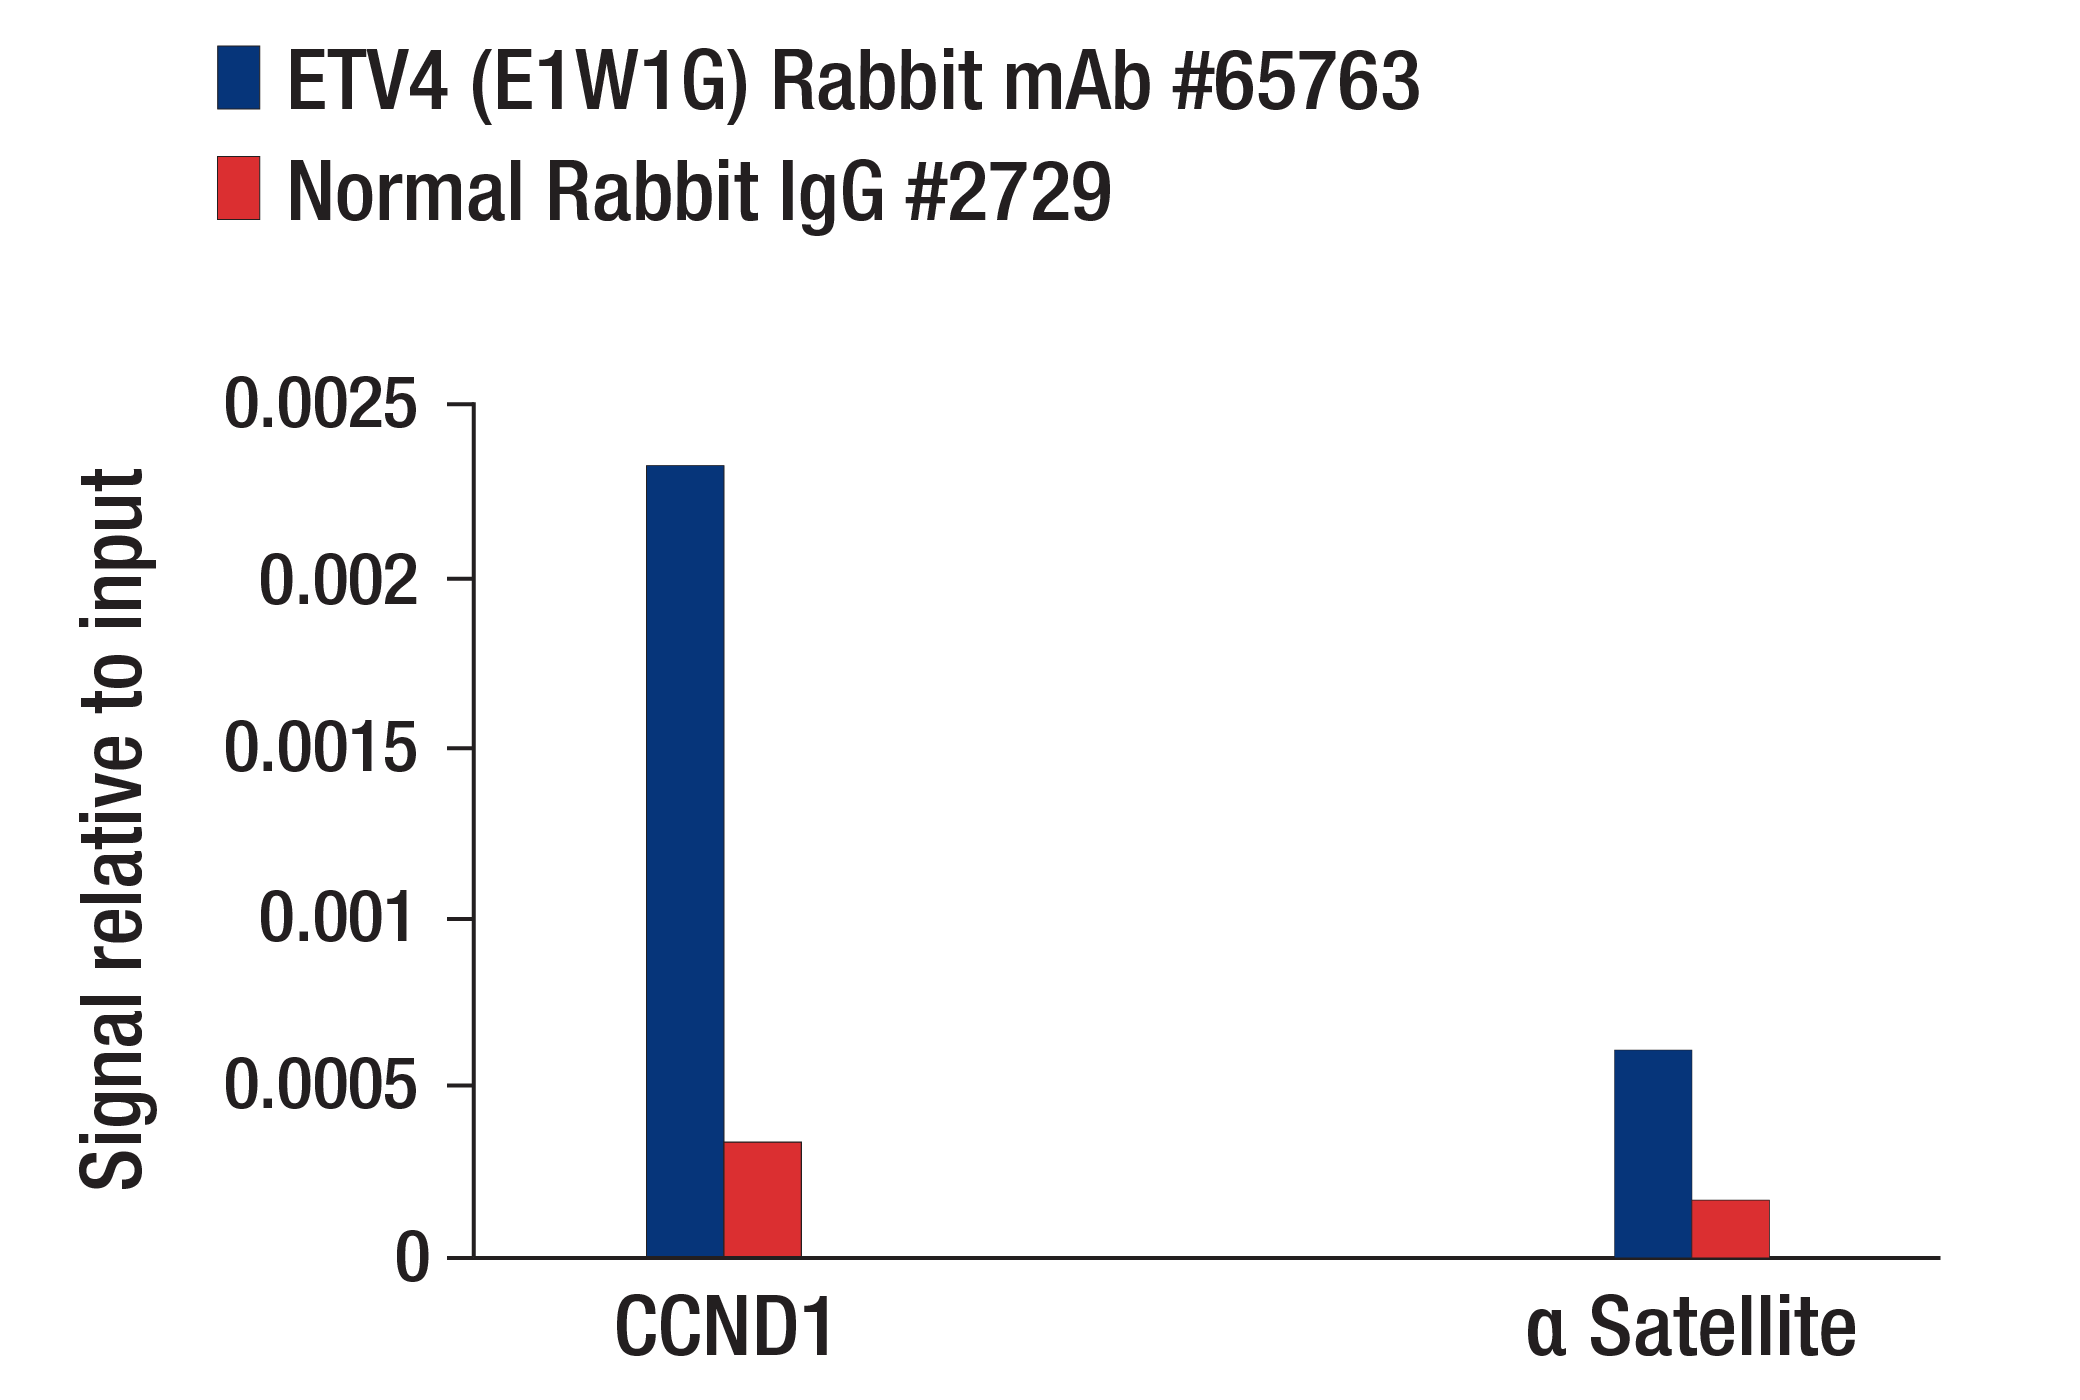 Chromatin Immunoprecipitation Image 1: ETV4 (E1W1G) Rabbit mAb